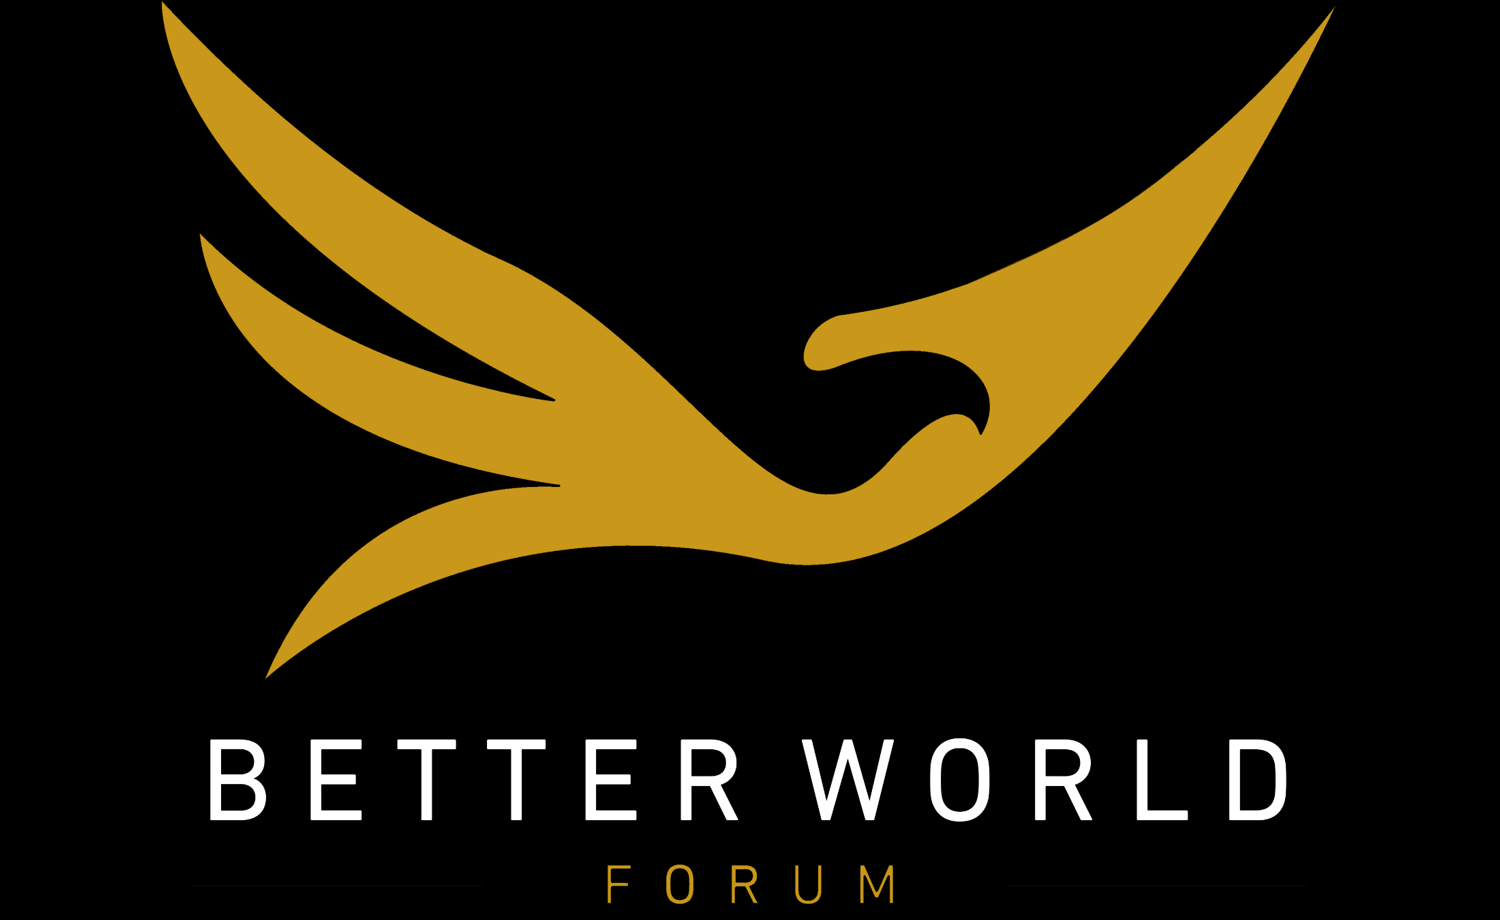 Better world forum and Visoansla